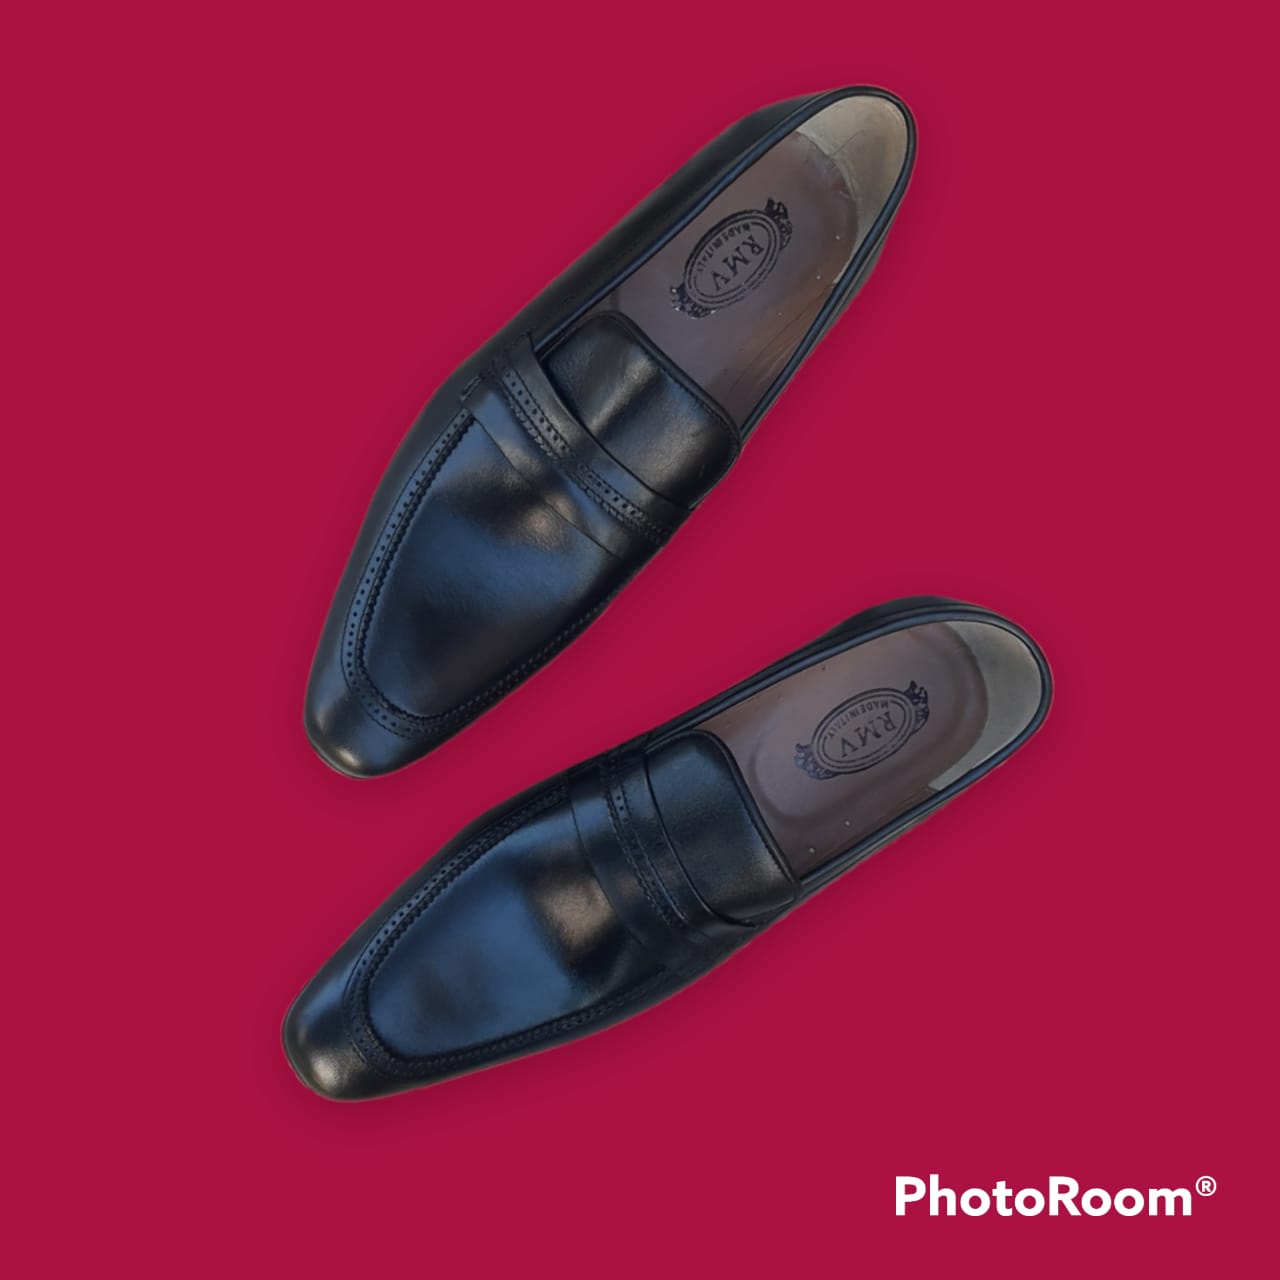 Mocassin en Cuir Louis Vuitton - Chaussure de Mode Pour Homme Couleur Noir  FOF00191 - Sodishop